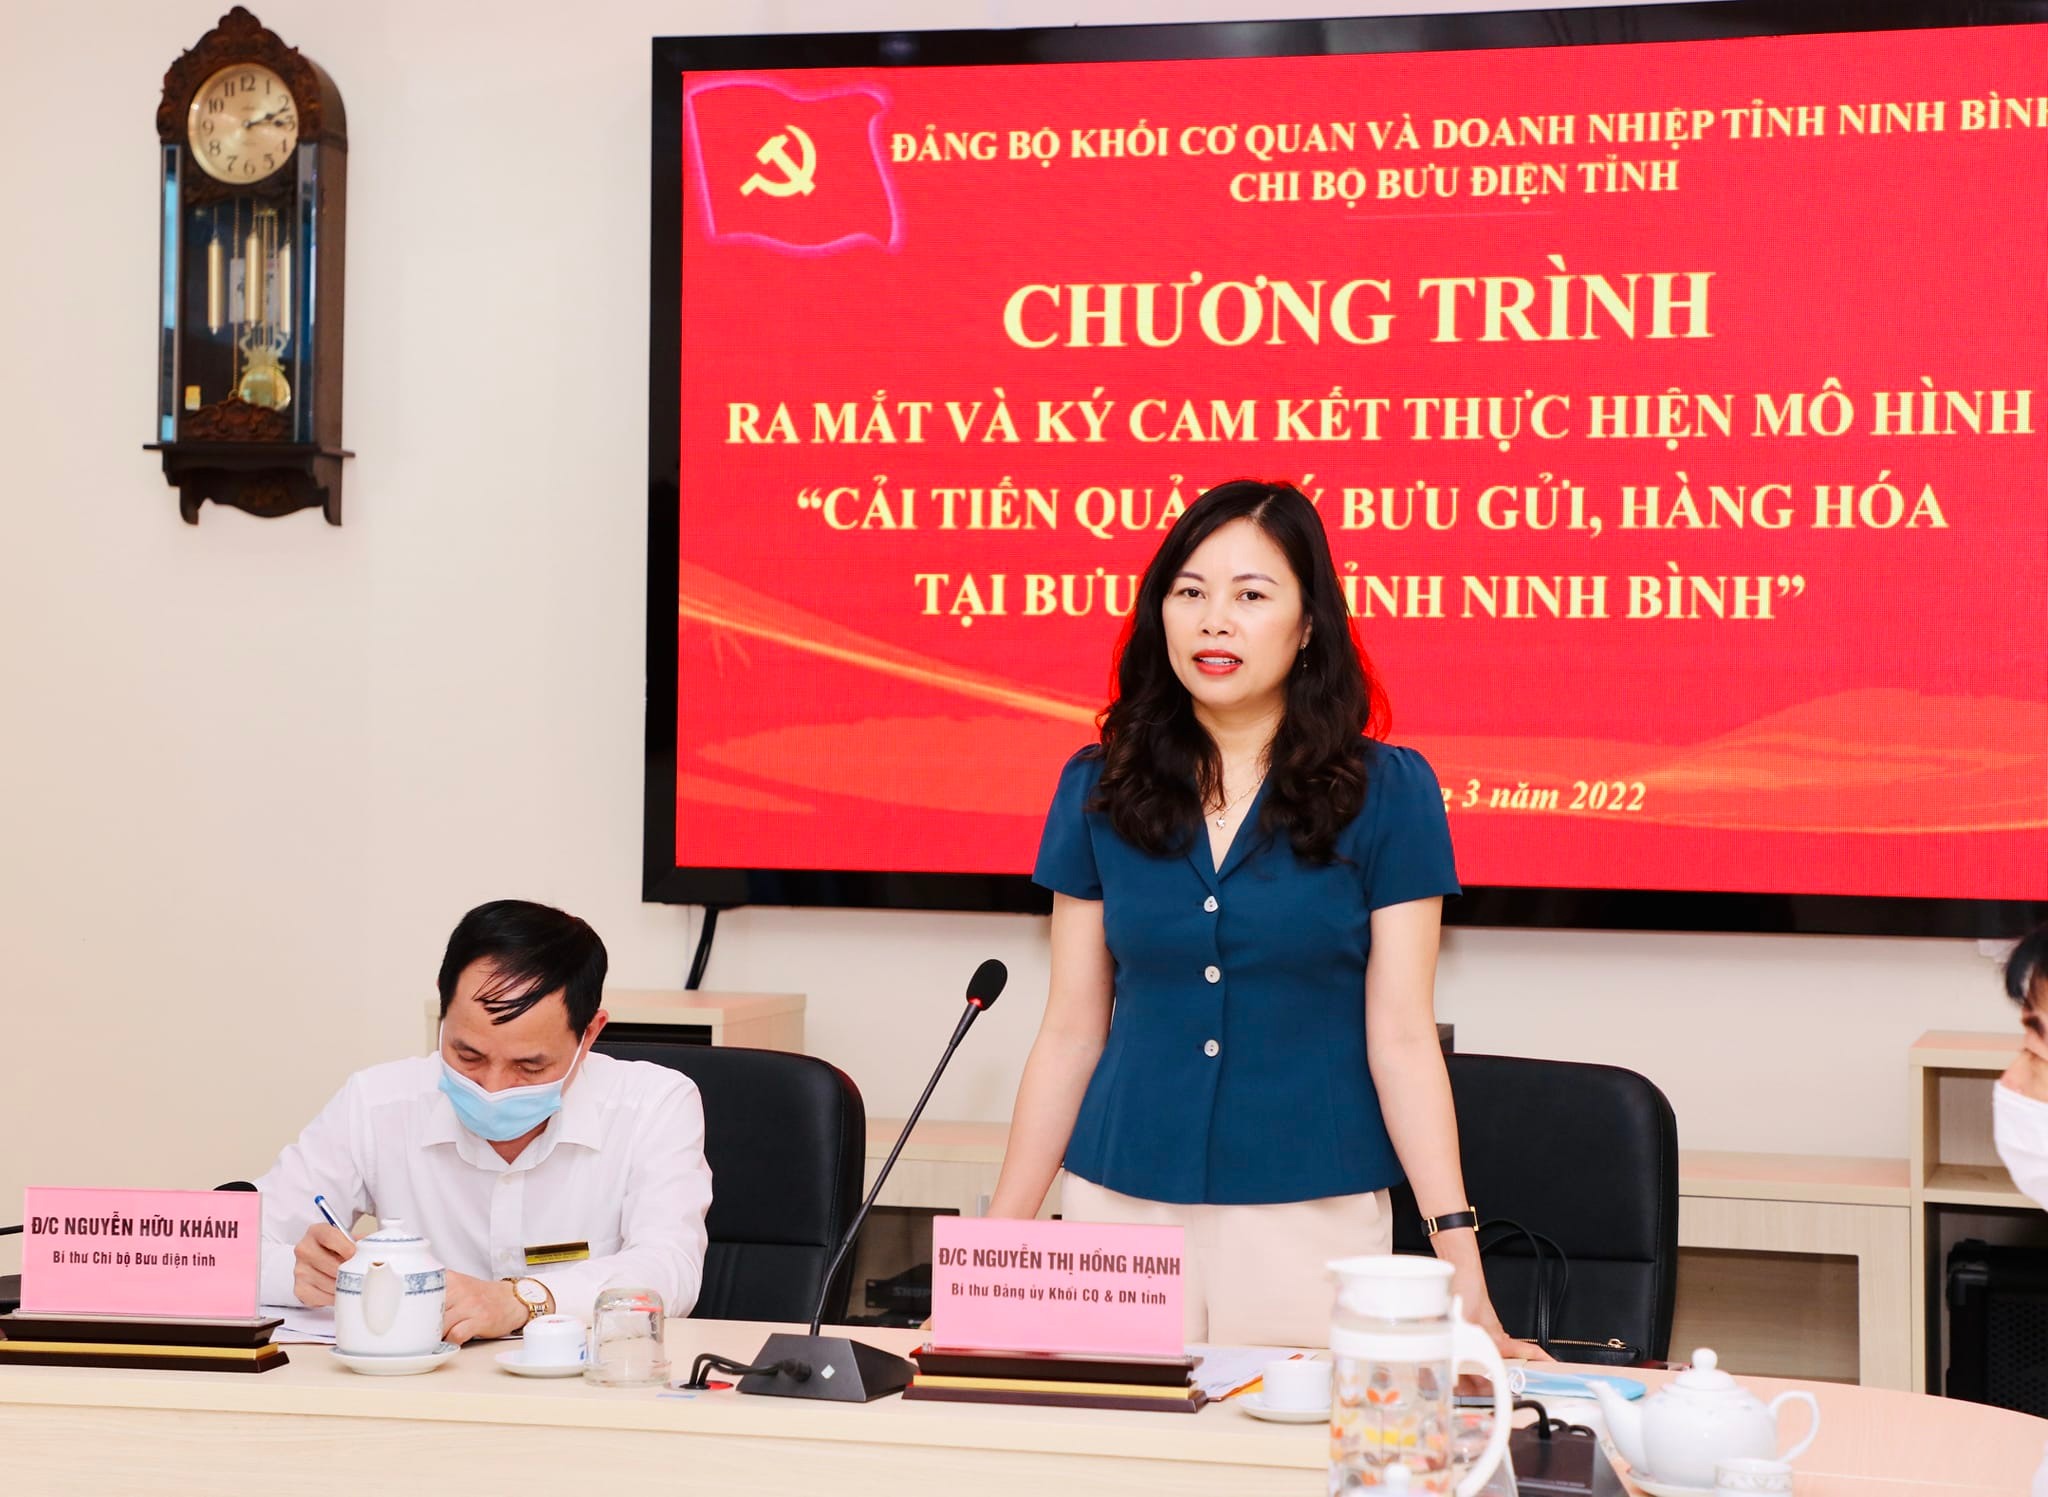 Hội nghị ký cam kết thực hiện mô hình điểm tại Chi bộ Bưu điện tỉnh Ninh Bình